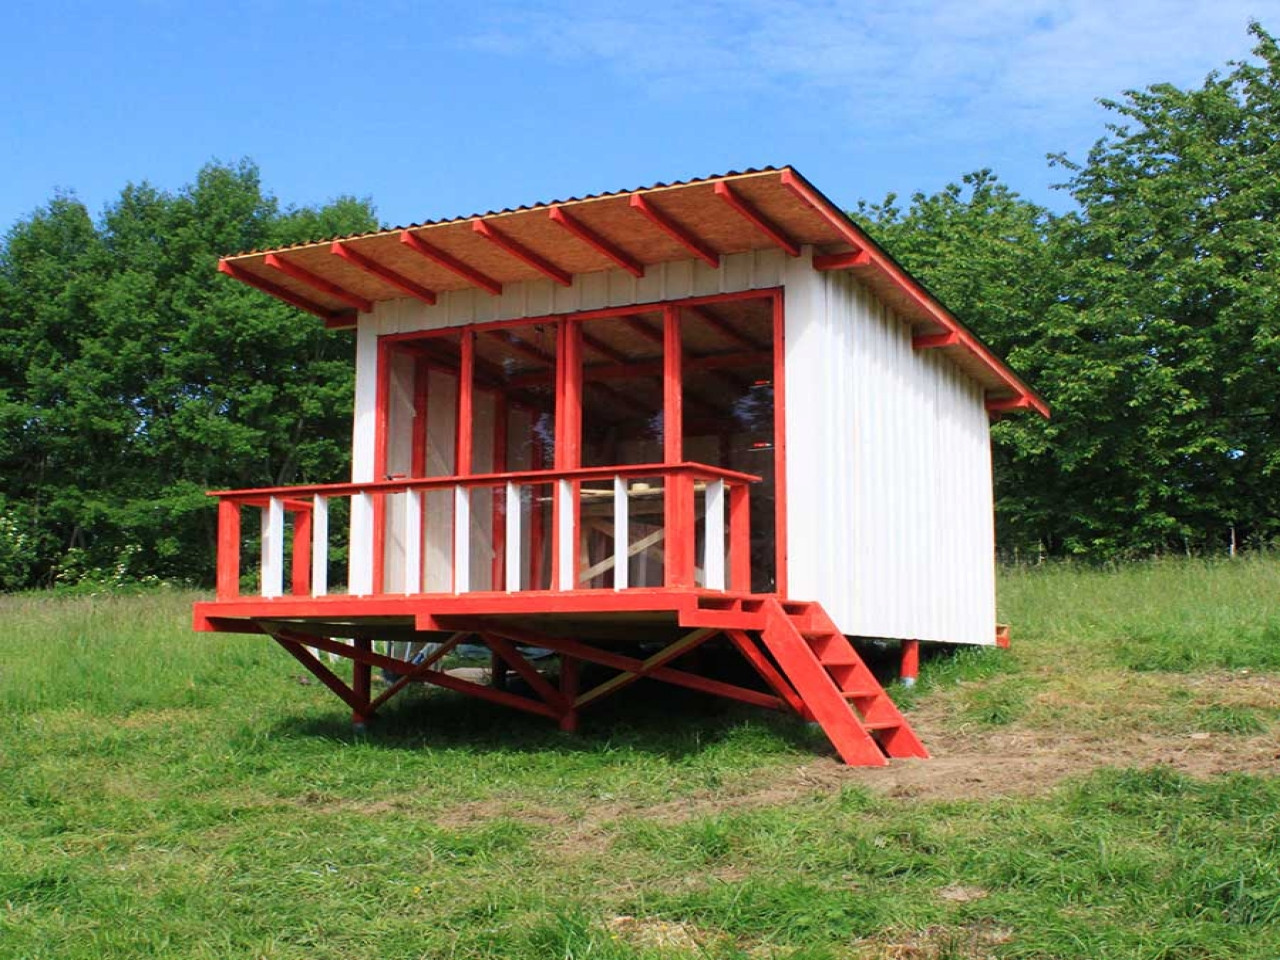 DIY Cabins Plans
 DIY Small Cabin Plans Rustic Small Cabin Plans dyi cabin